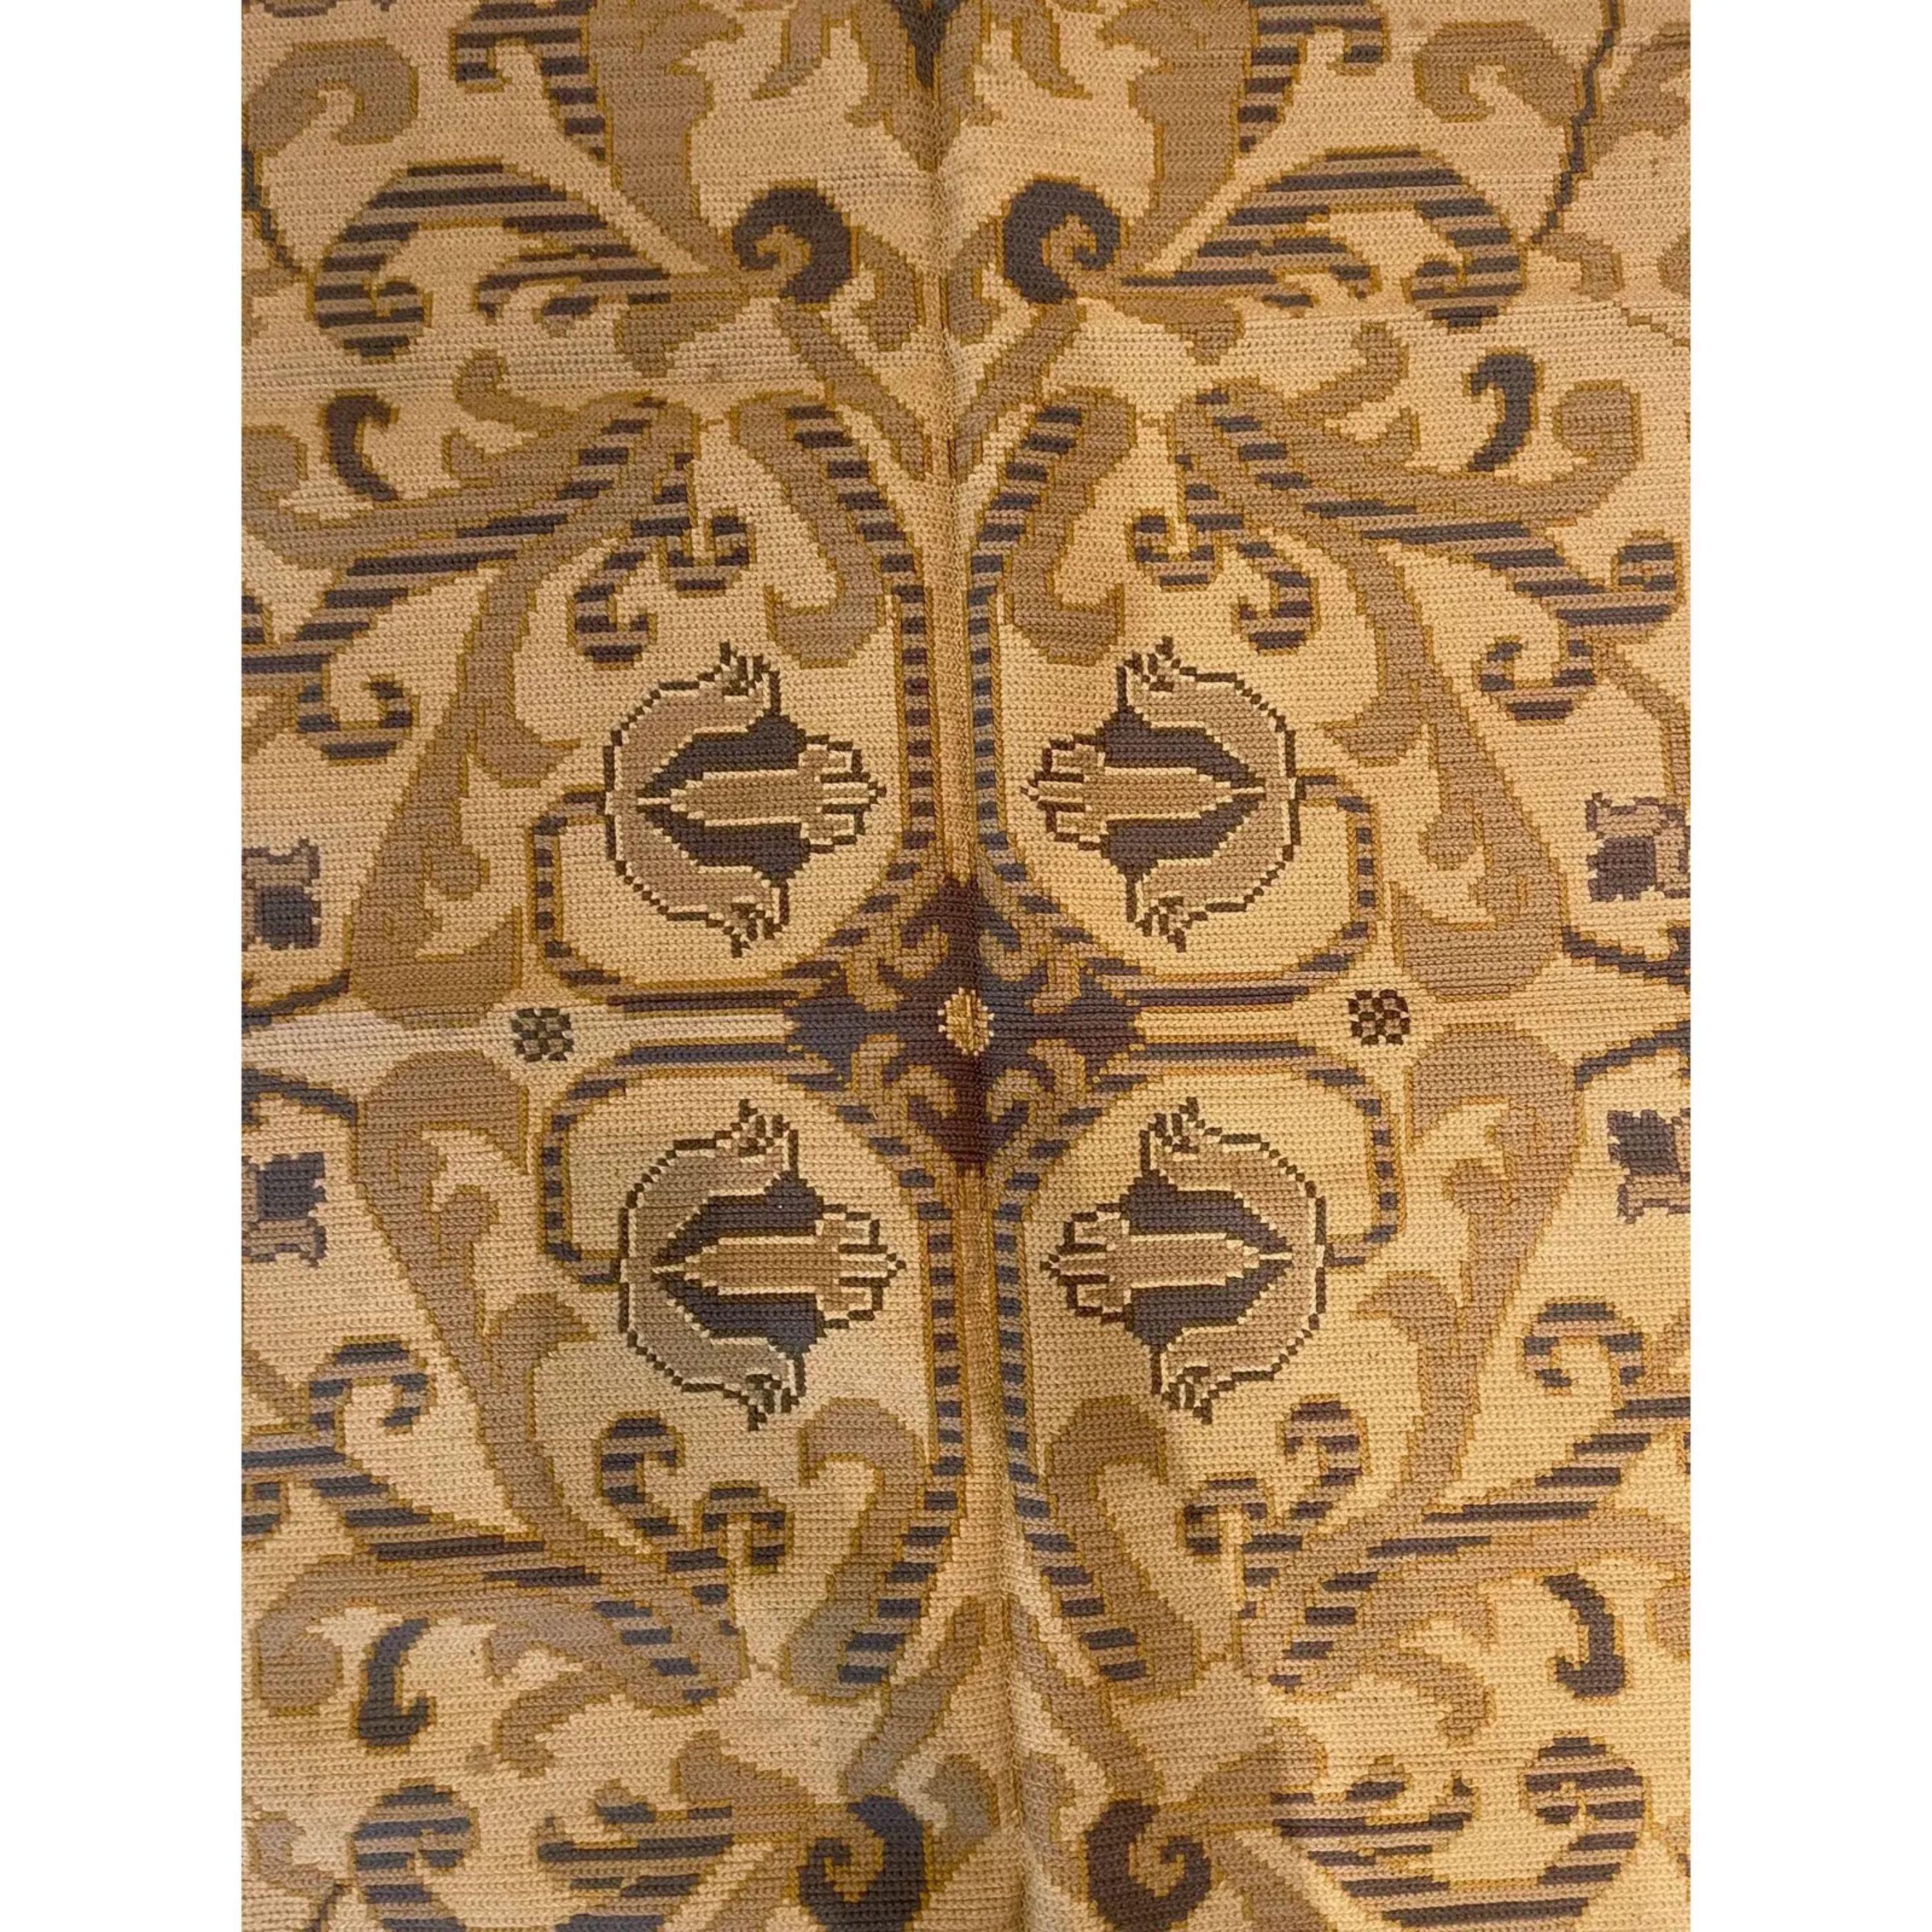 Les tapis aux points d'aiguille ont été créés en utilisant la technique traditionnelle de tissage à l'aiguille qui est utilisée pour fabriquer des objets de tous les jours, des meubles aux tapis en passant par les œuvres d'art. Pourtant, son